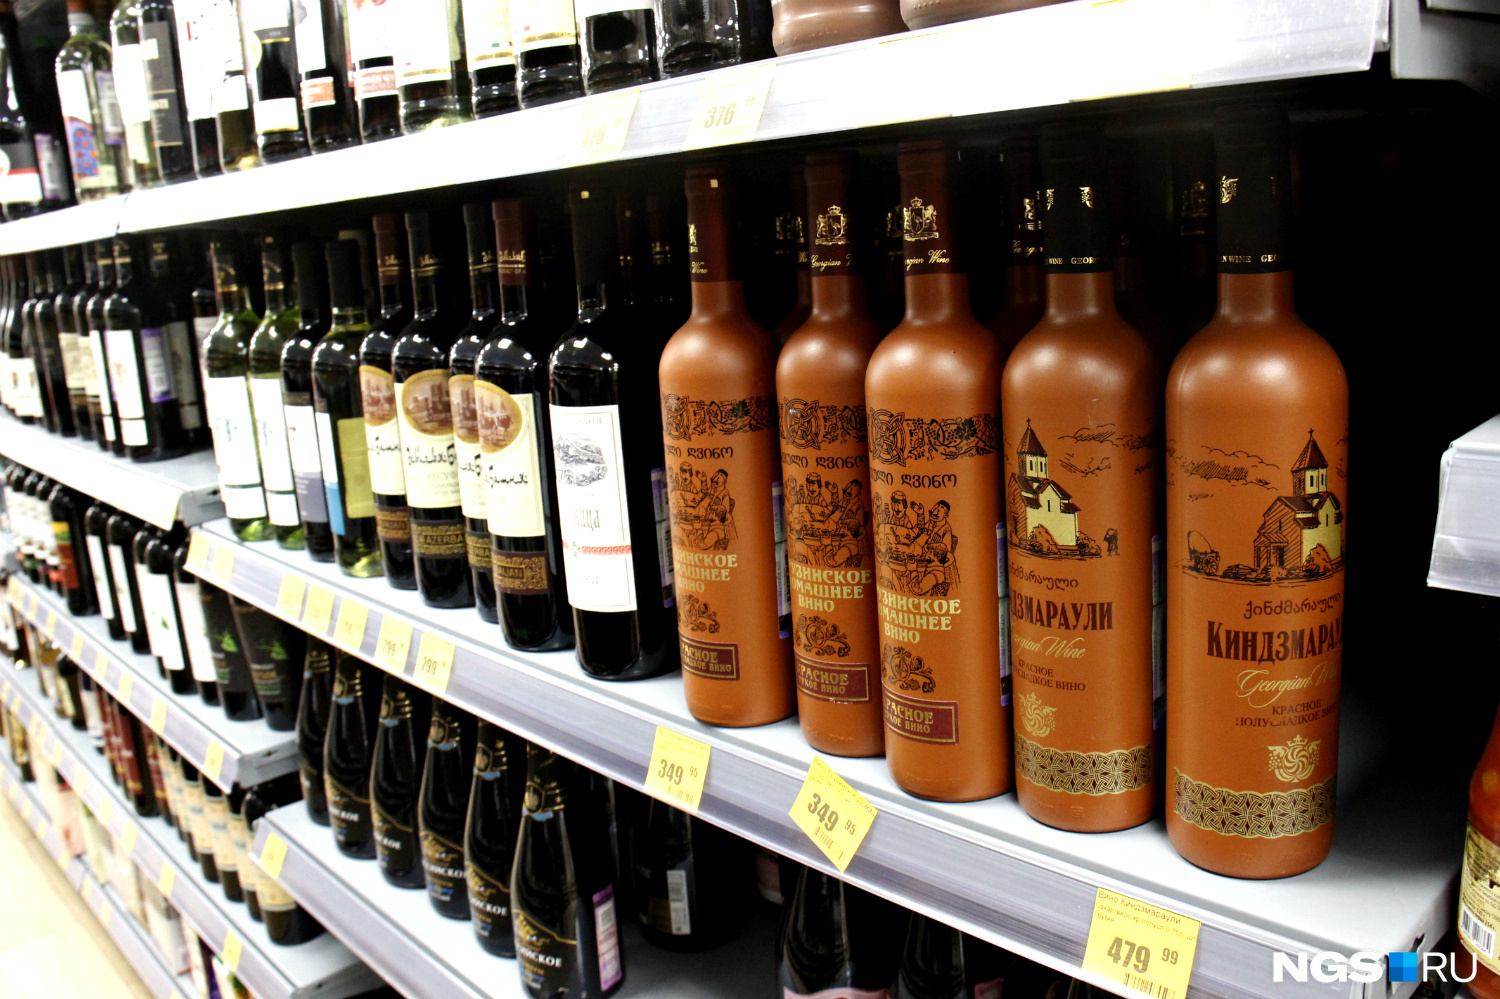 Как выяснилось, «грузинское вино» можно производить и в Сибири. Например, в Томске